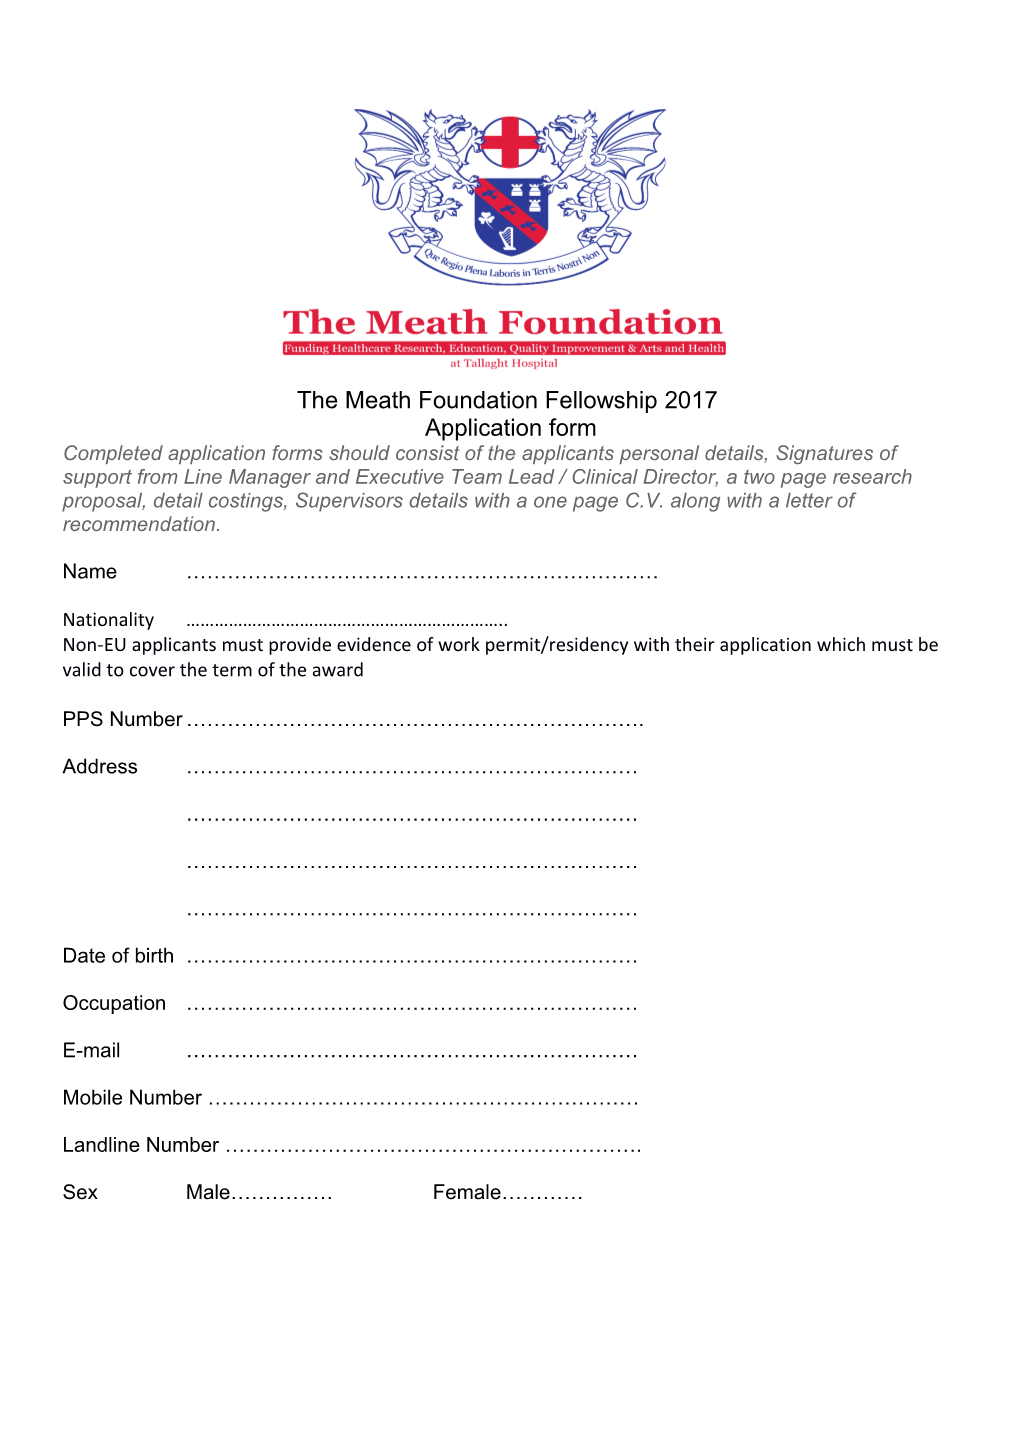 The Meath Foundation Fellowship 2017